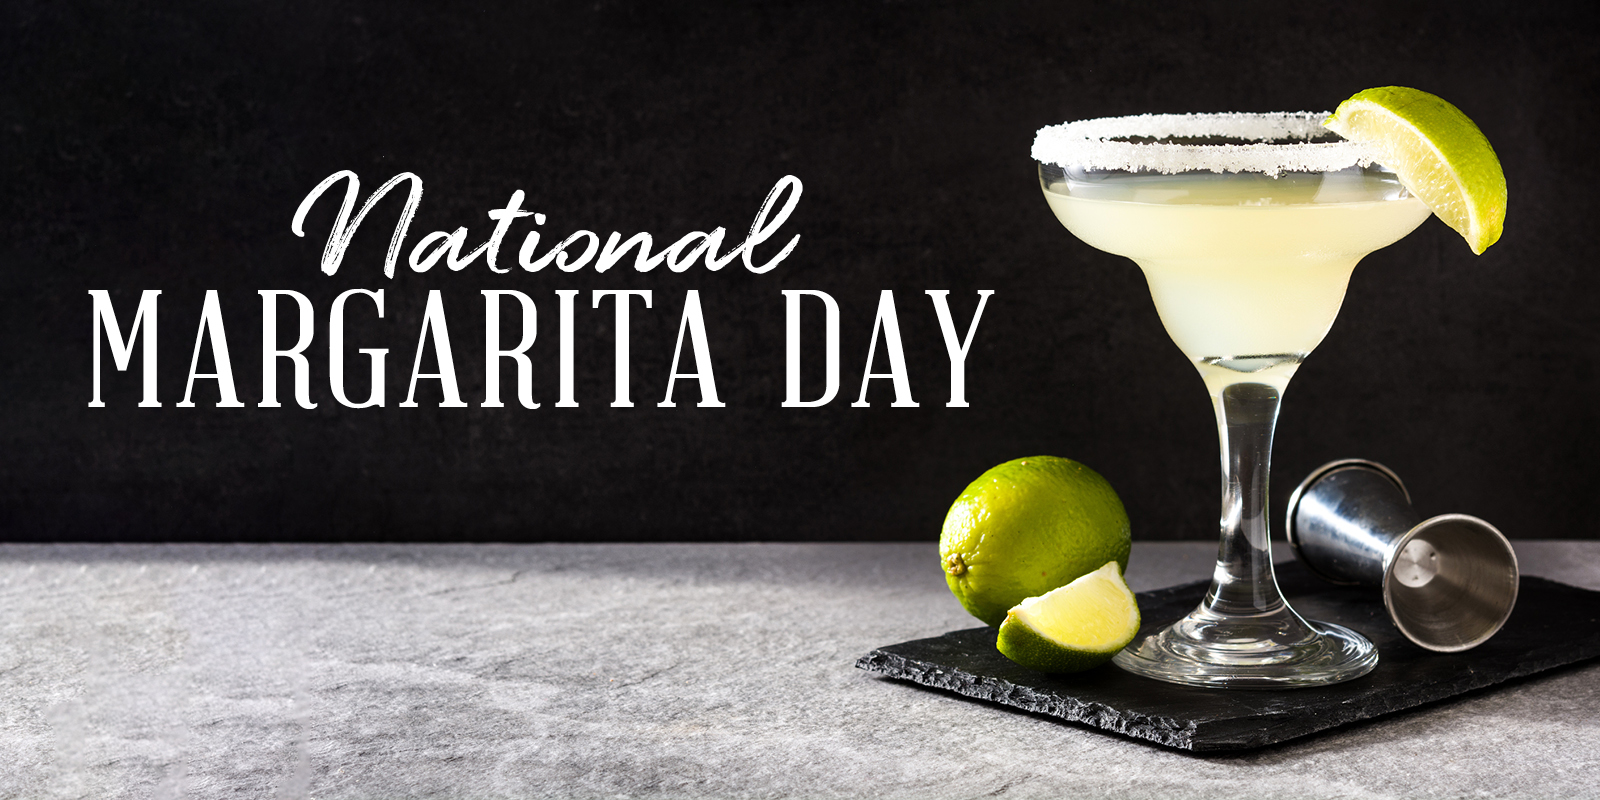 ¡Salud por el Día Nacional de la Margarita!